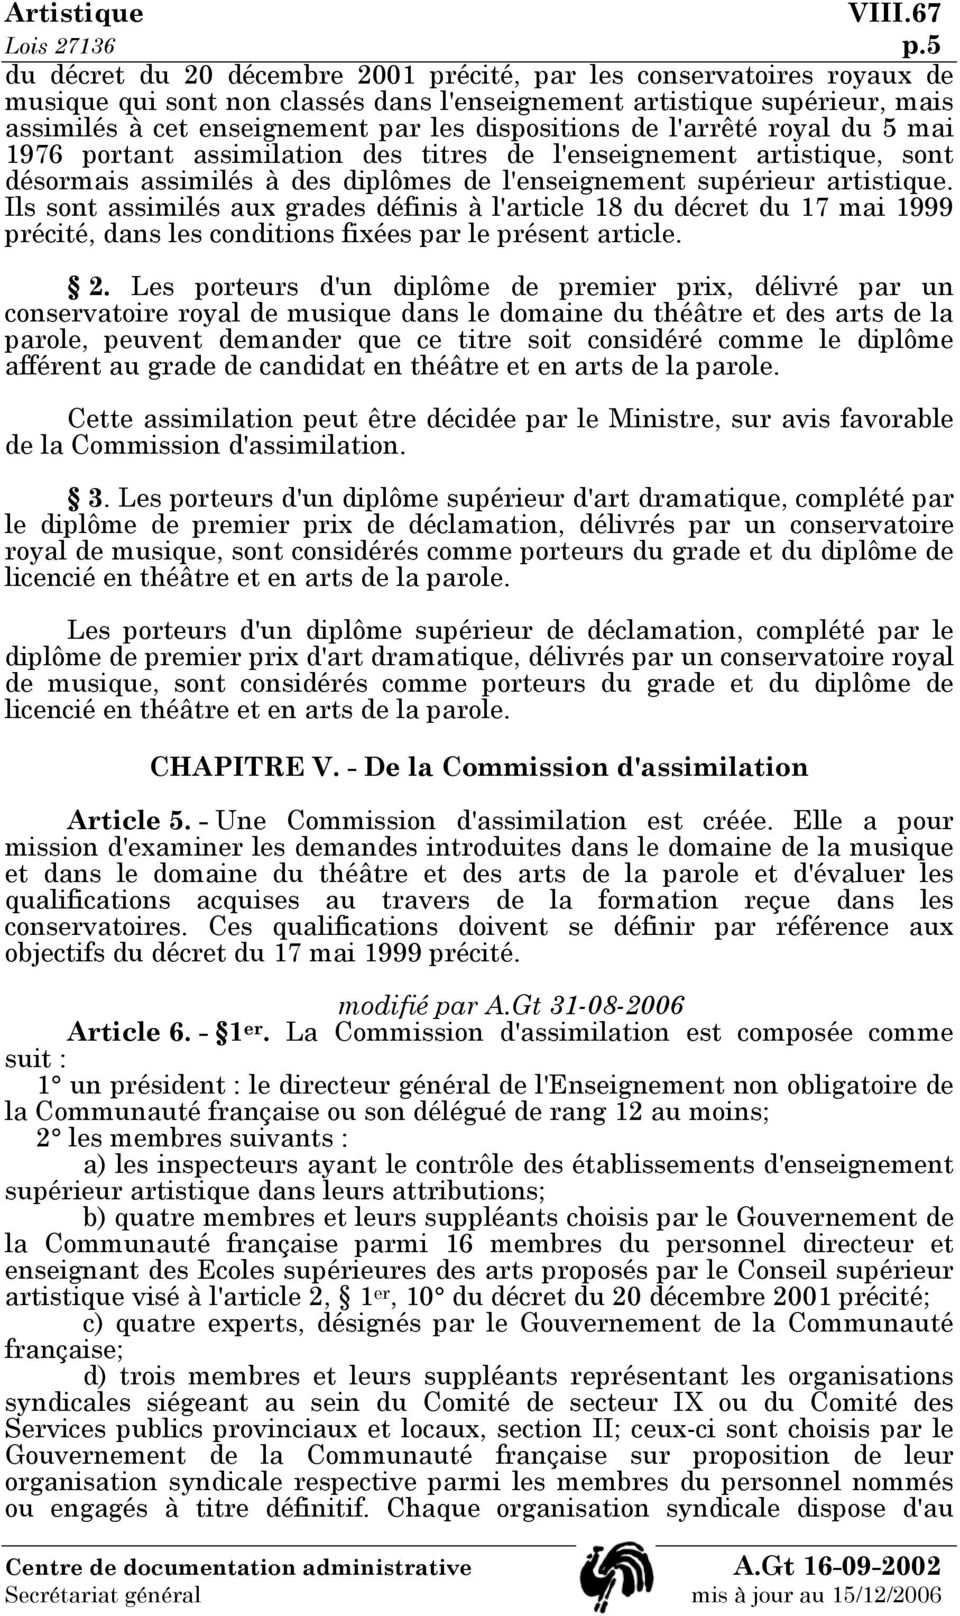 de l'arrêté royal du 5 mai 1976 portant assimilation des titres de l'enseignement artistique, sont désormais assimilés à des diplômes de l'enseignement supérieur artistique.